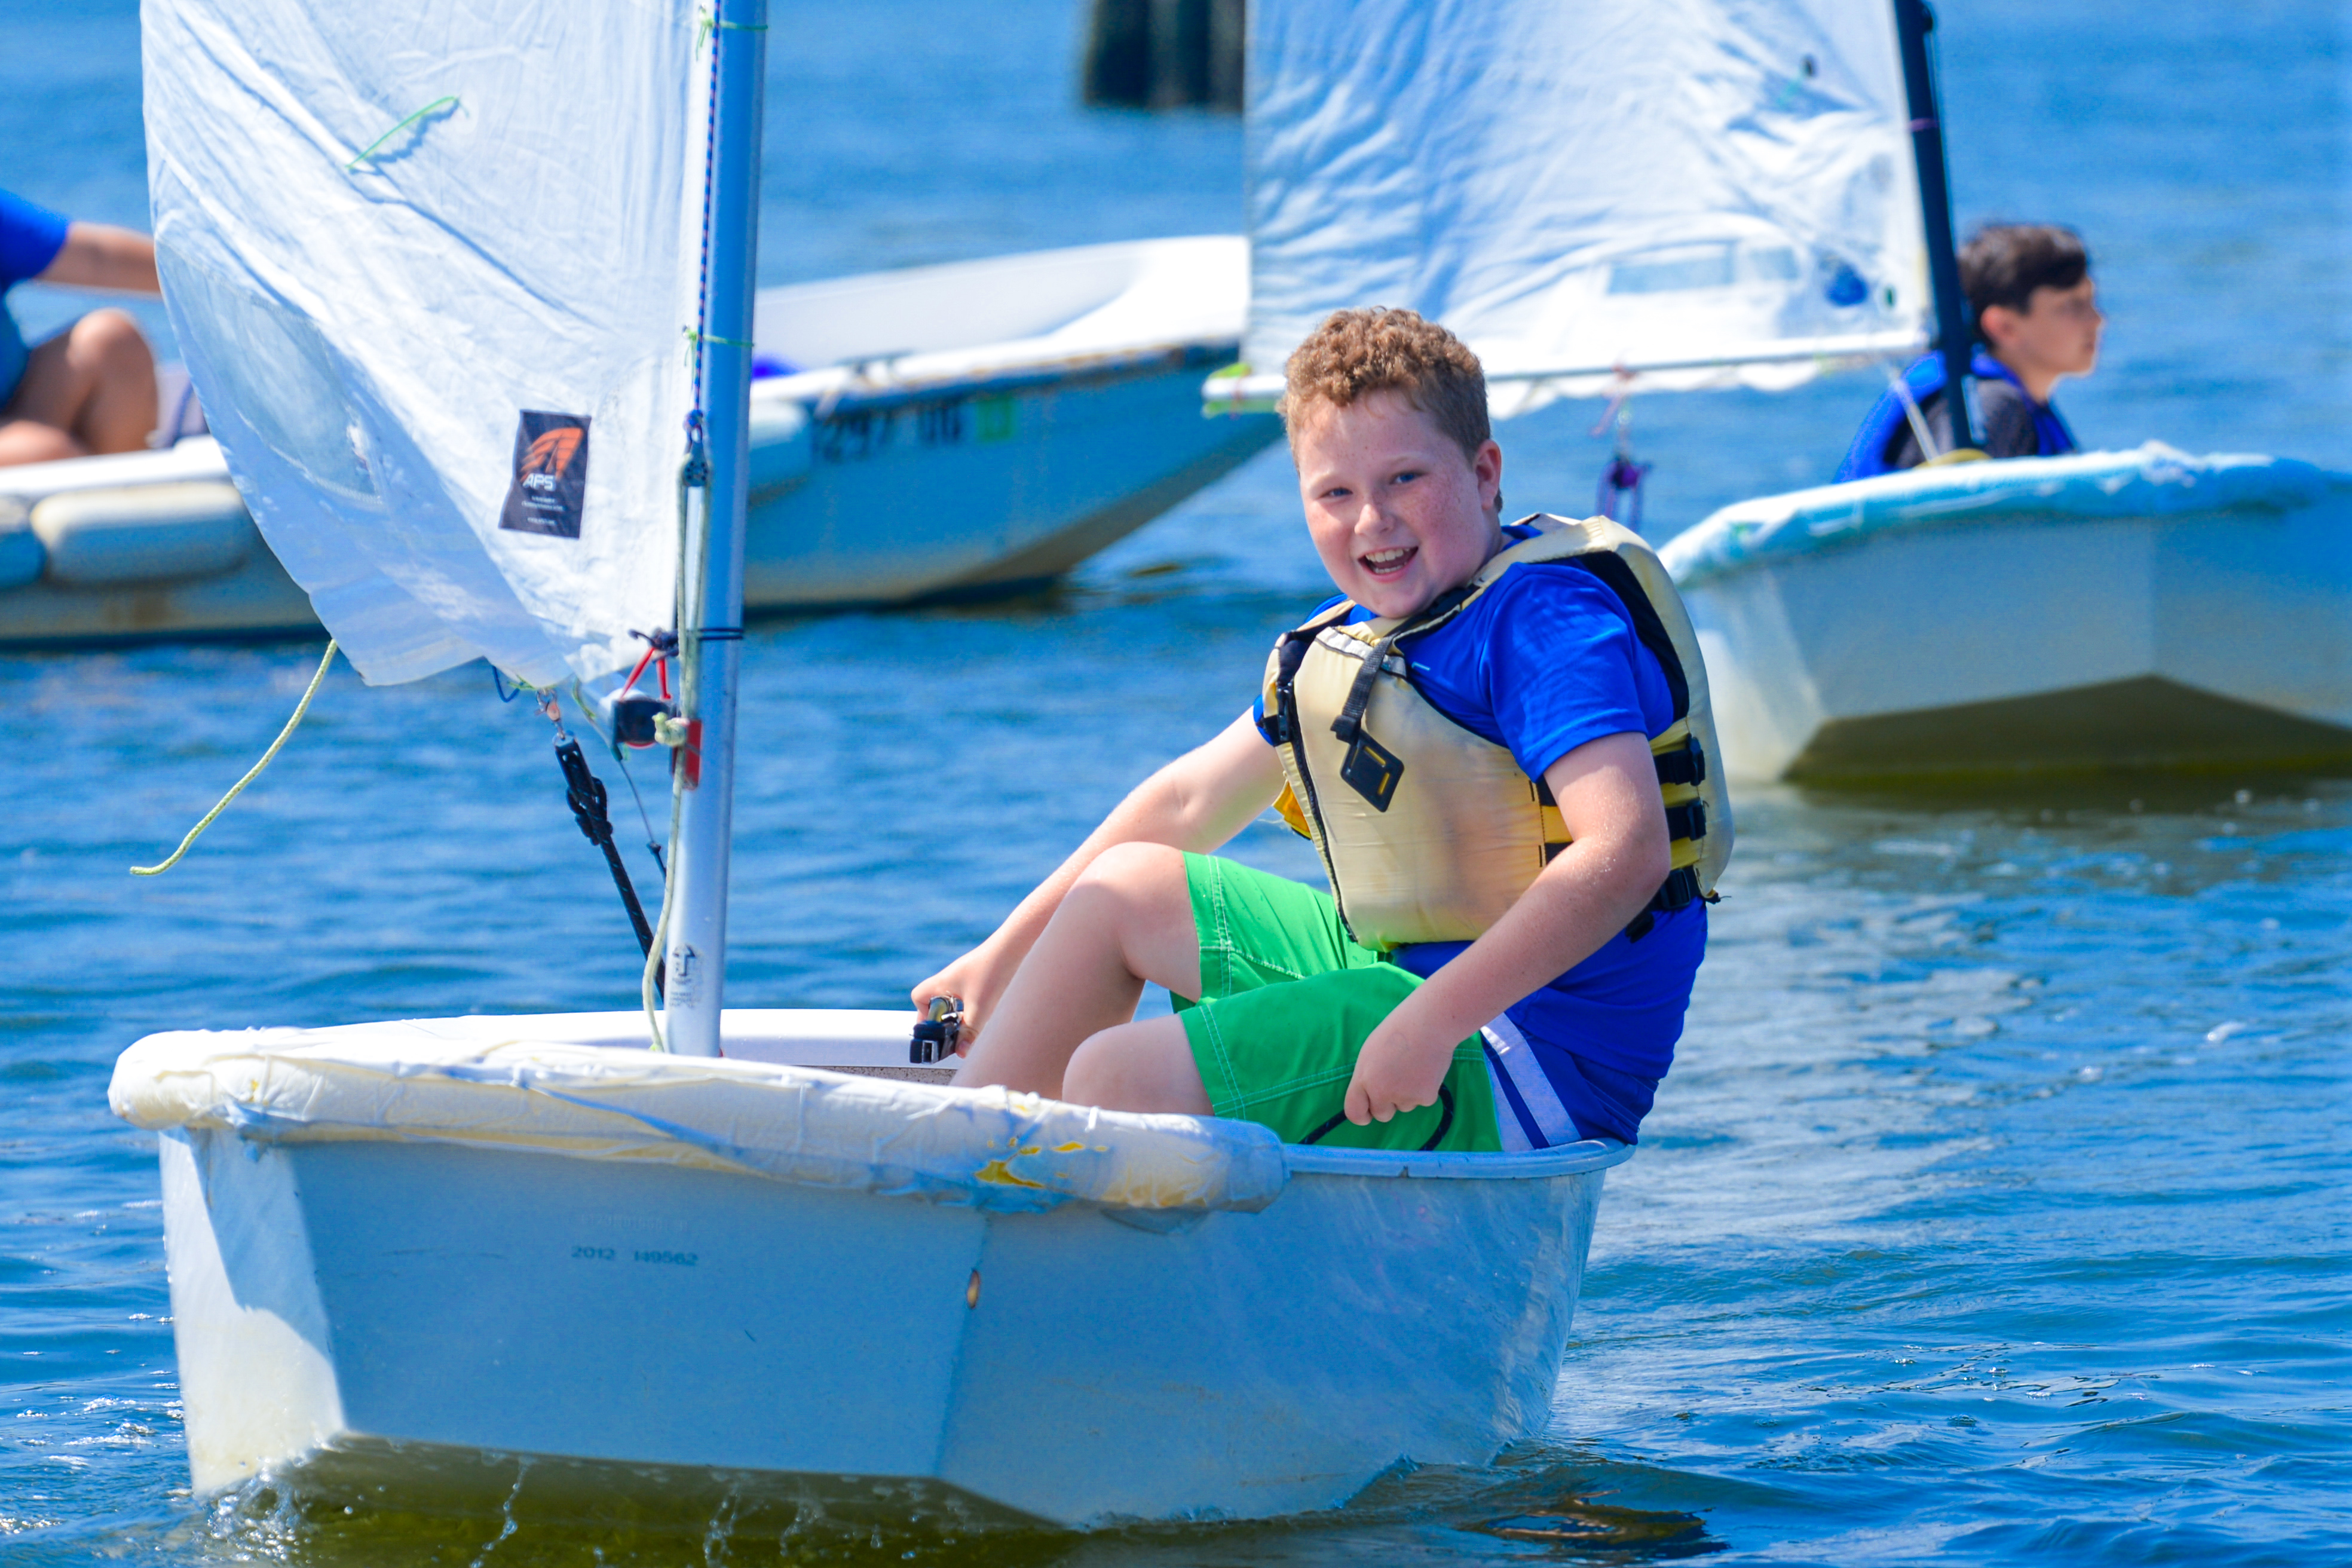 Smiling boy brings his sailboat to shore